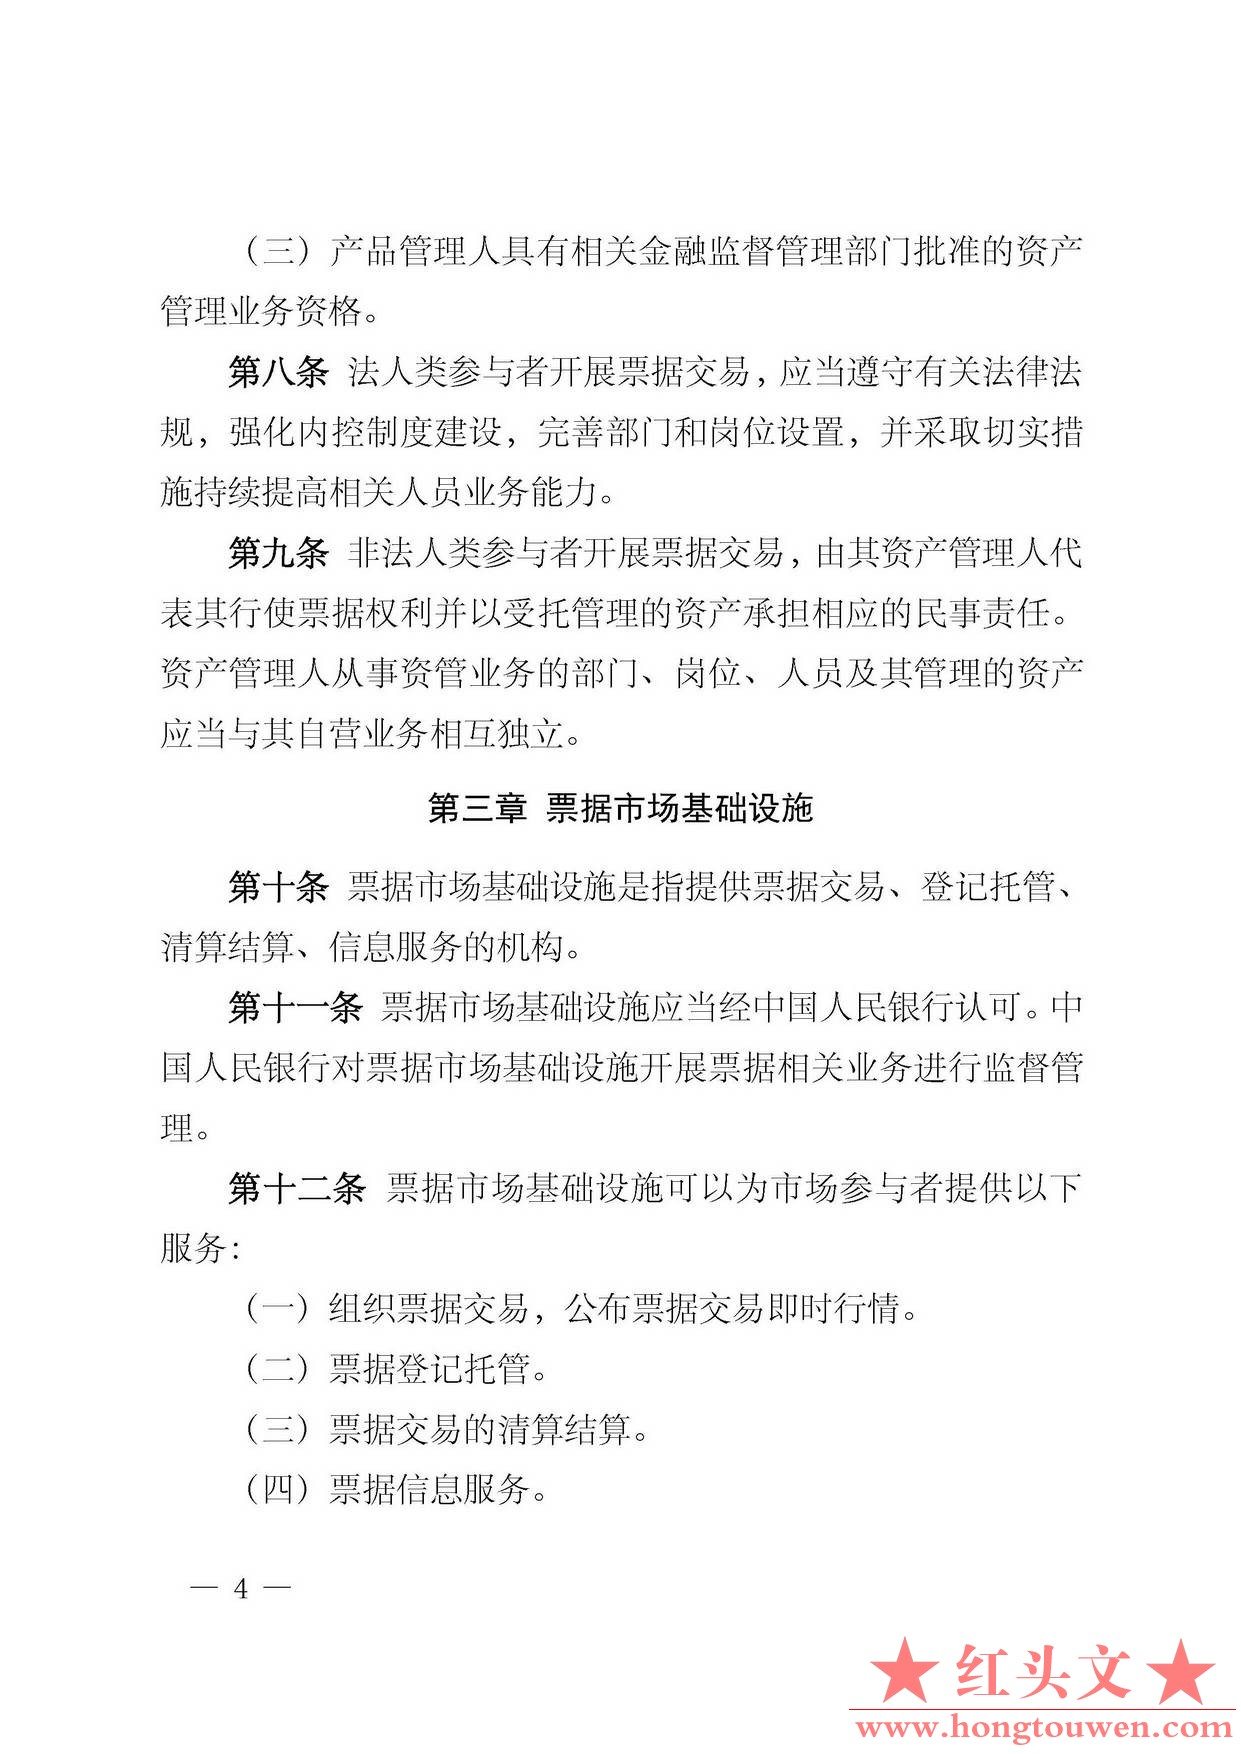 中国人民银行公告[2016]29号-票据交易管理办法_页面_04.jpg